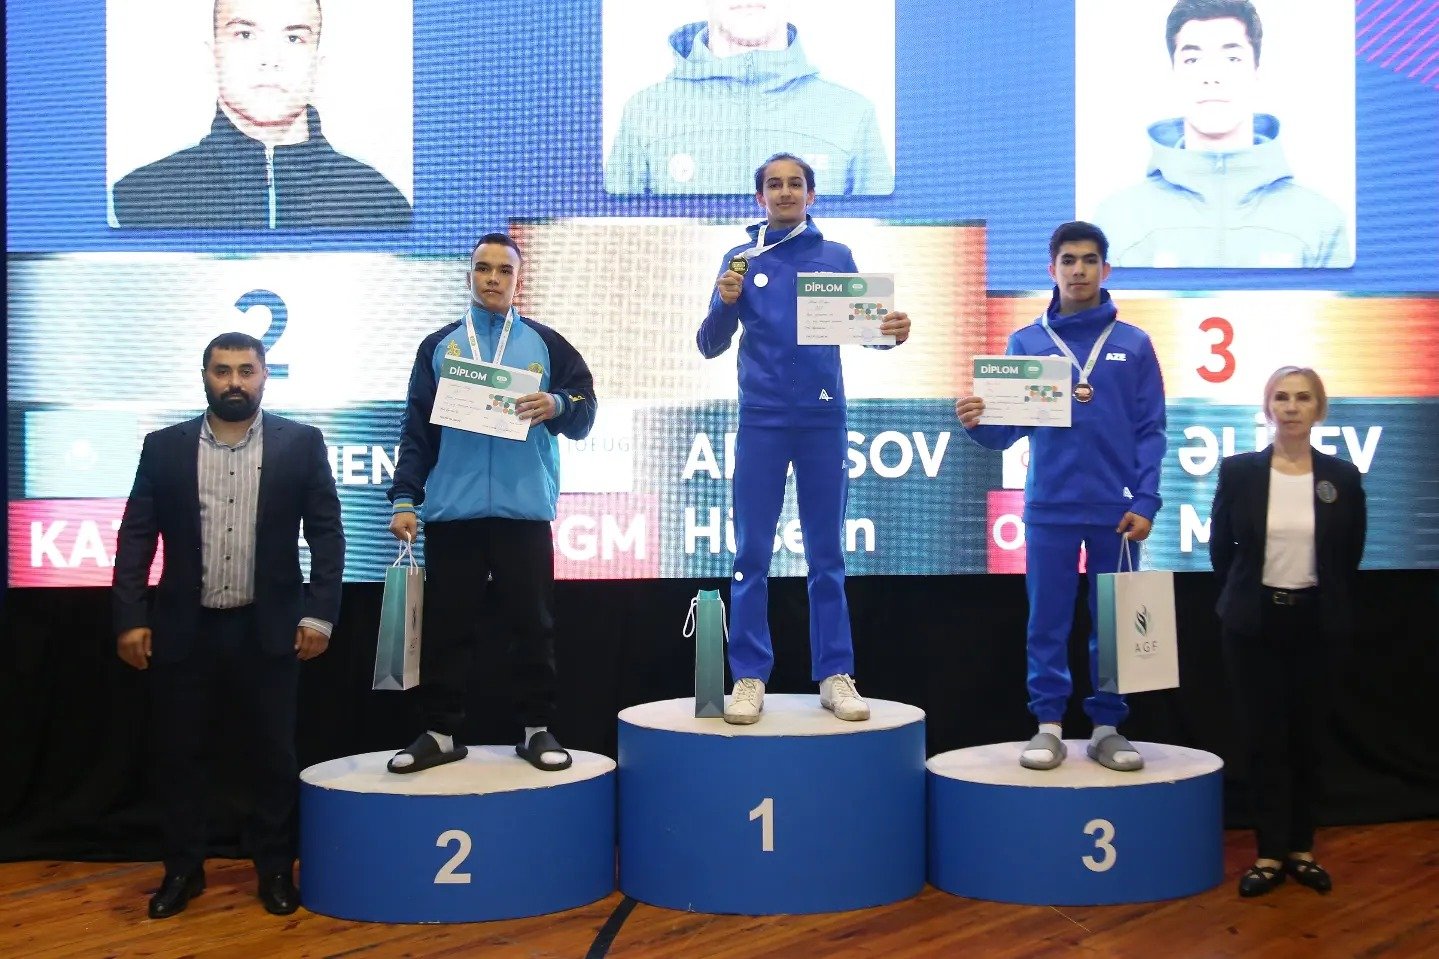 Определились победители 8-го открытого чемпионата Азербайджана и открытого первенства Баку по прыжкам на батуте (ФОТО)